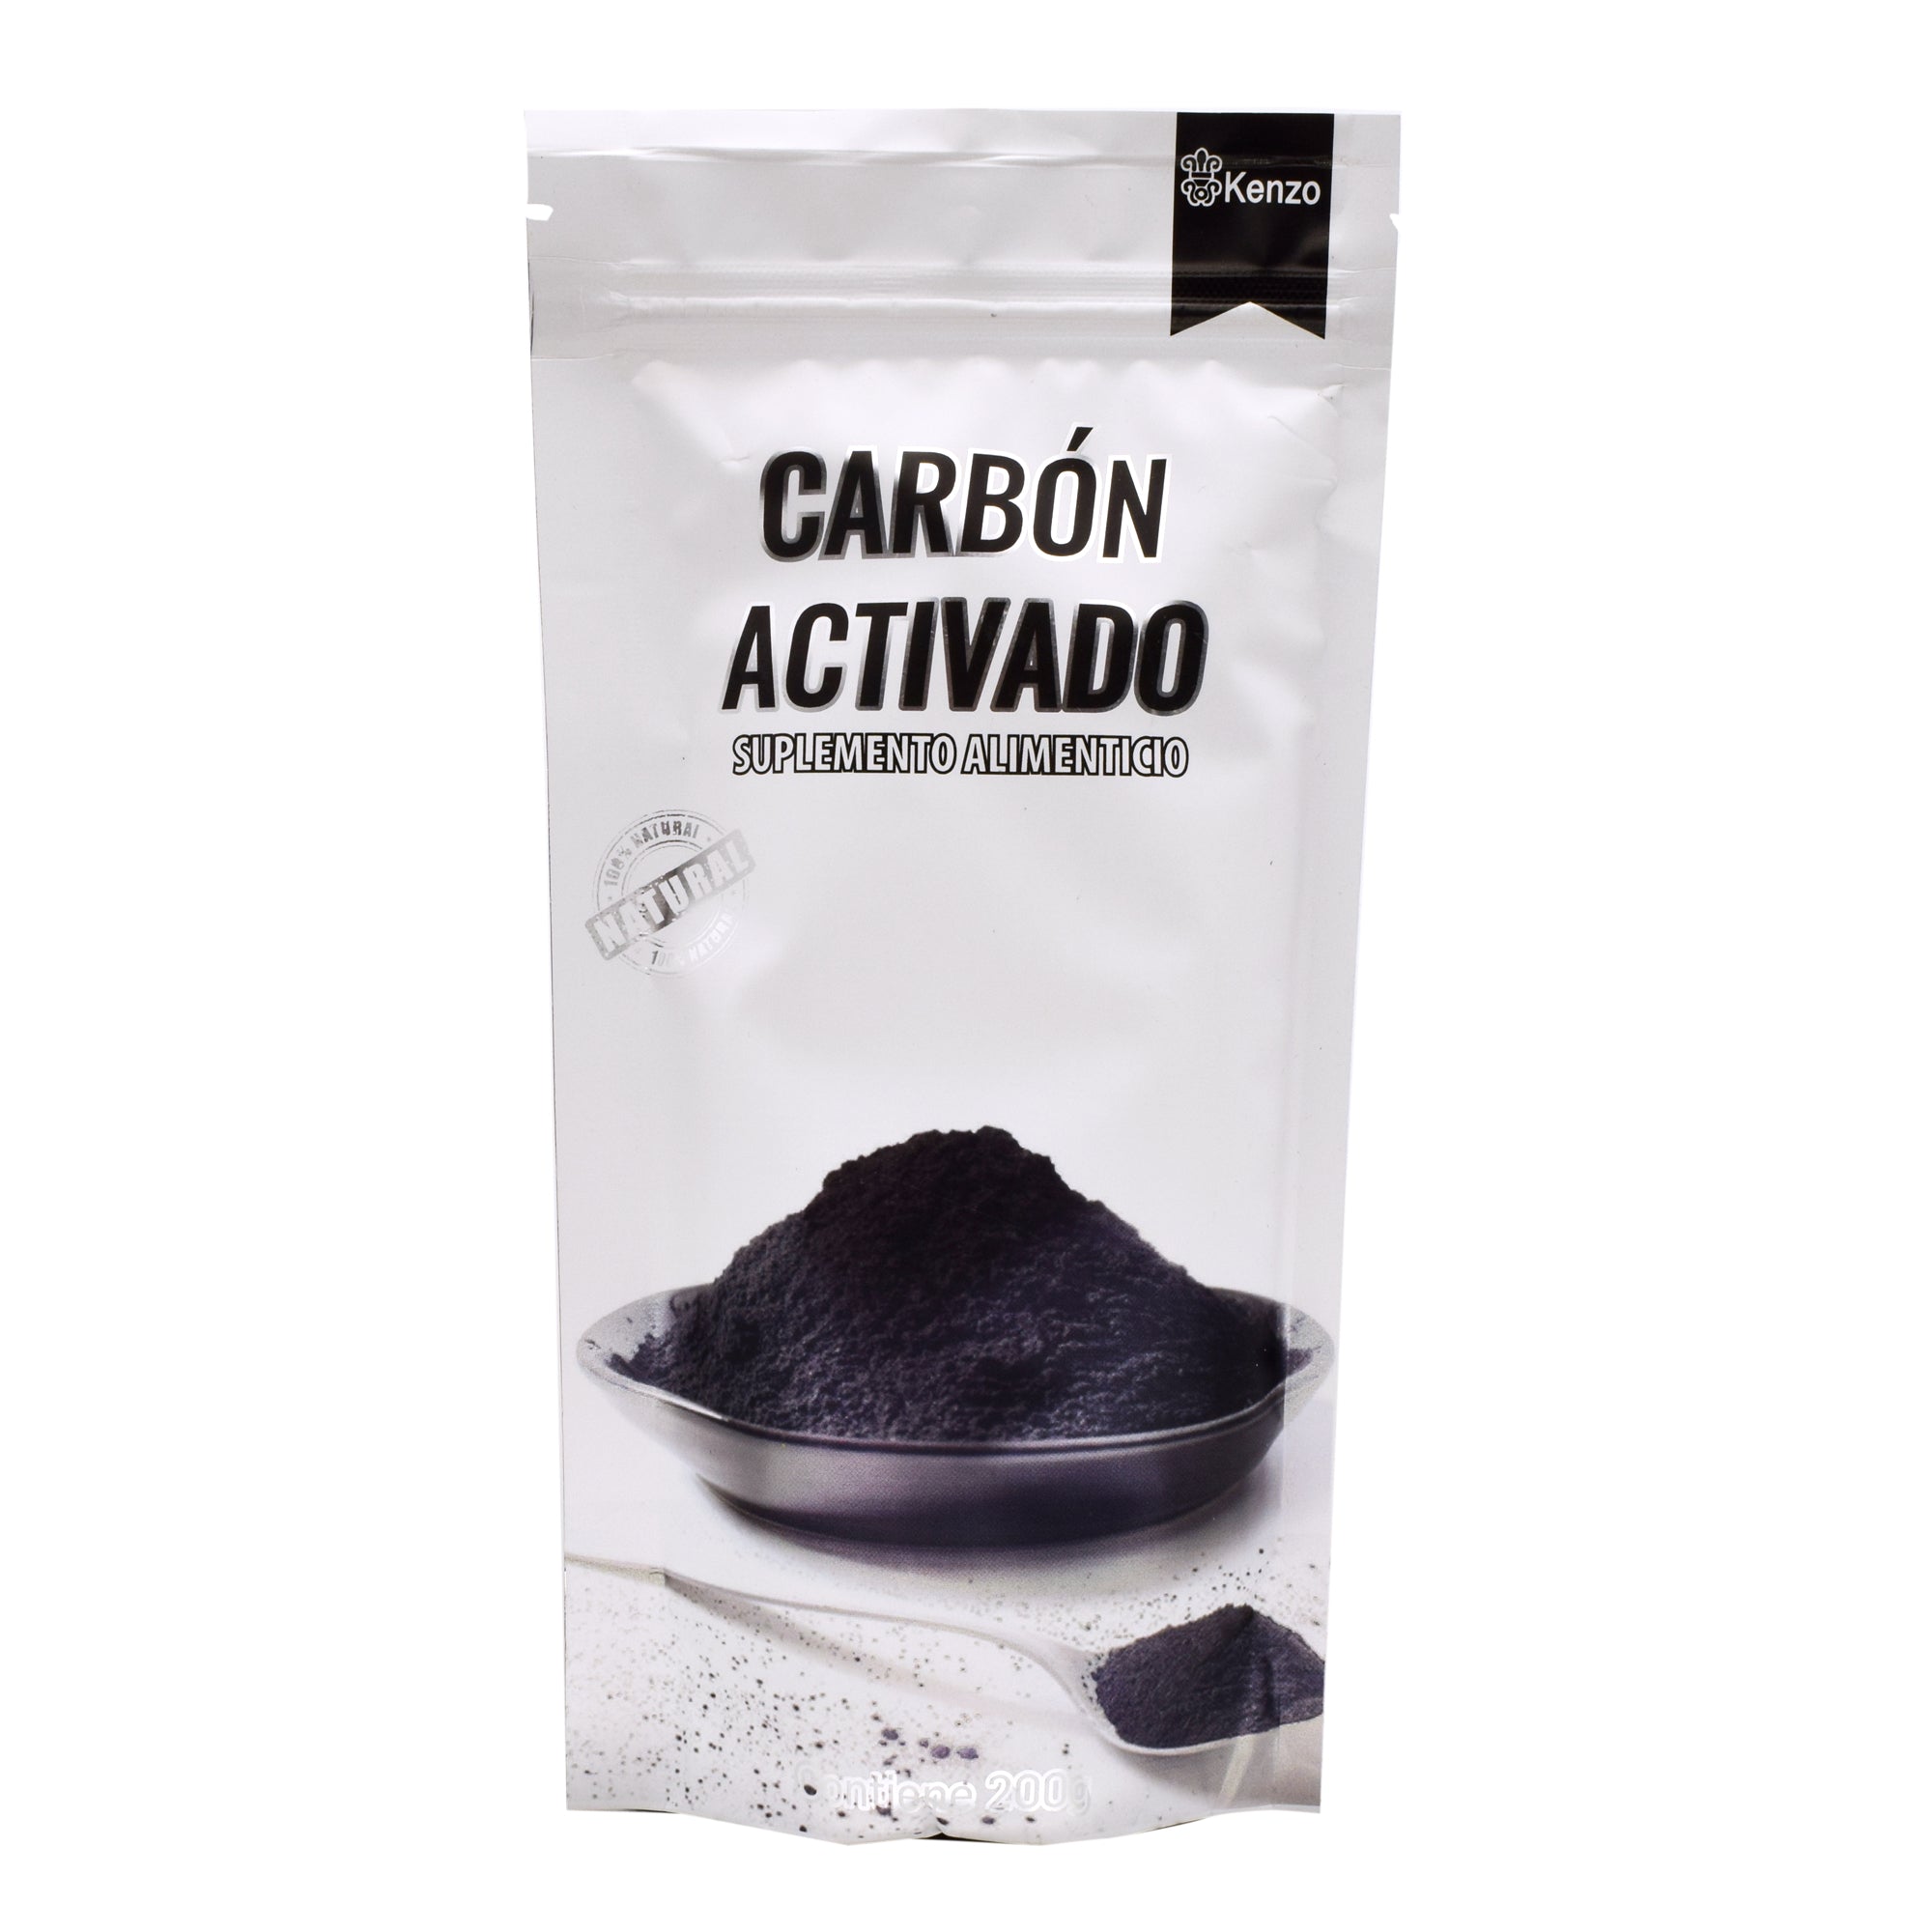 Carbon activado 200 g